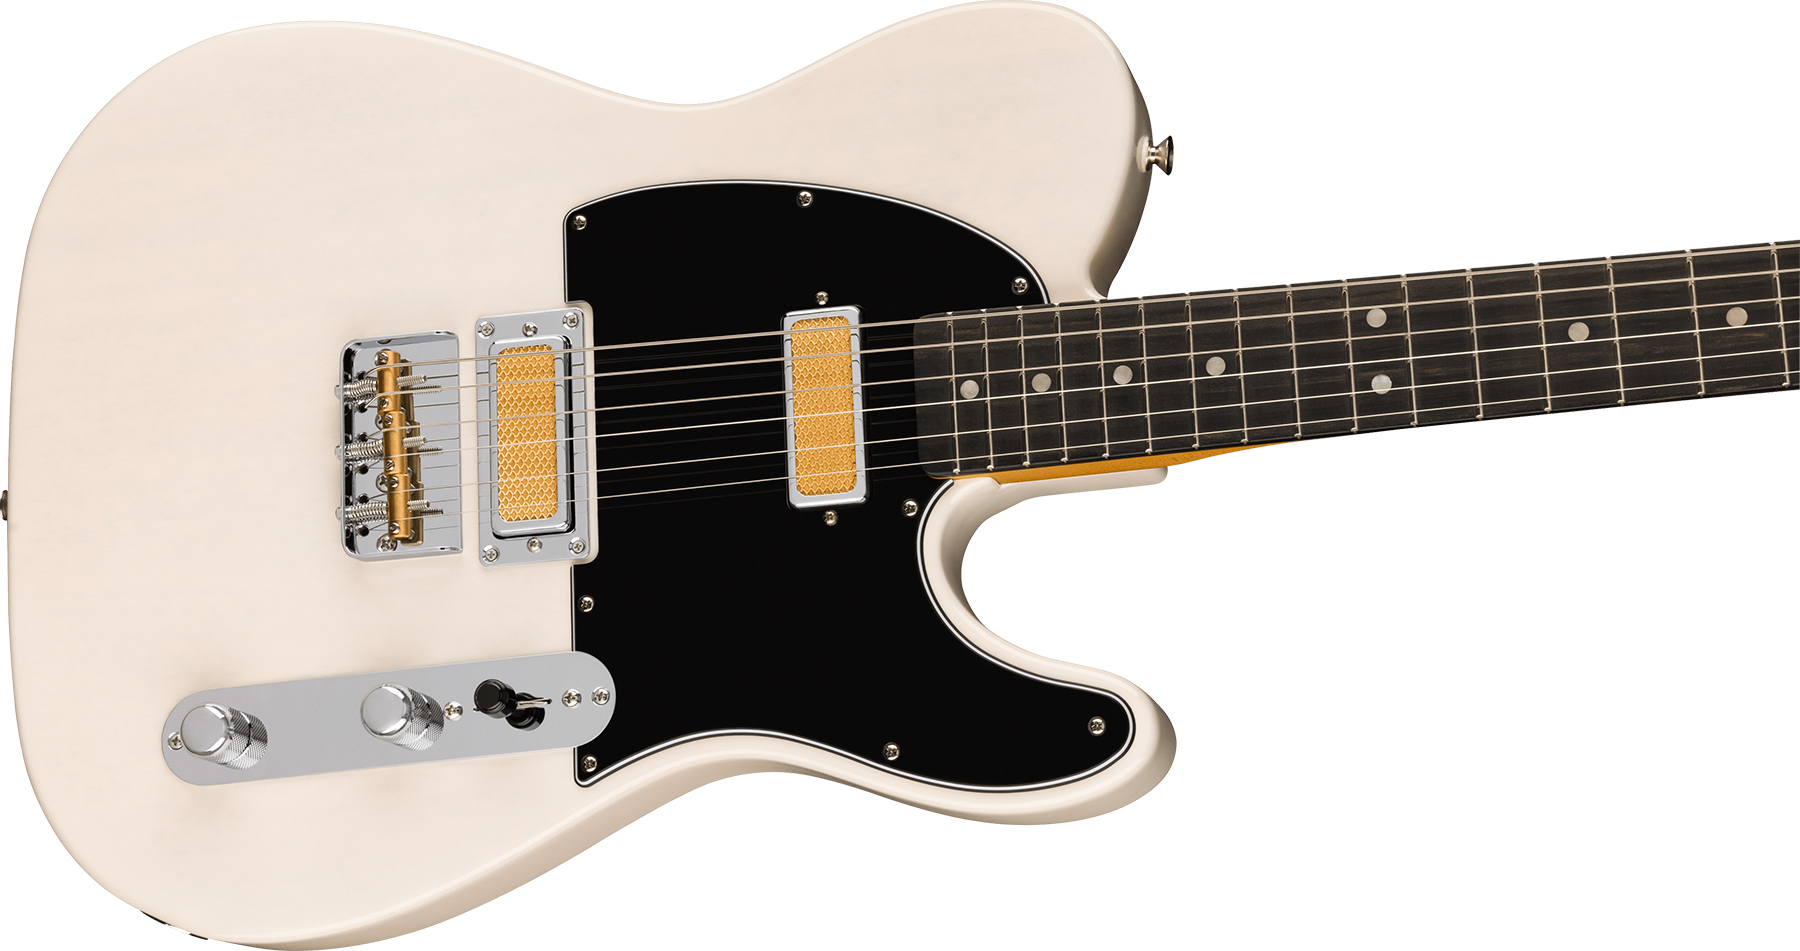 Fender Tele Gold Foil Ltd Mex 2mh Ht Eb - White Blonde - Guitarra eléctrica con forma de tel - Variation 2